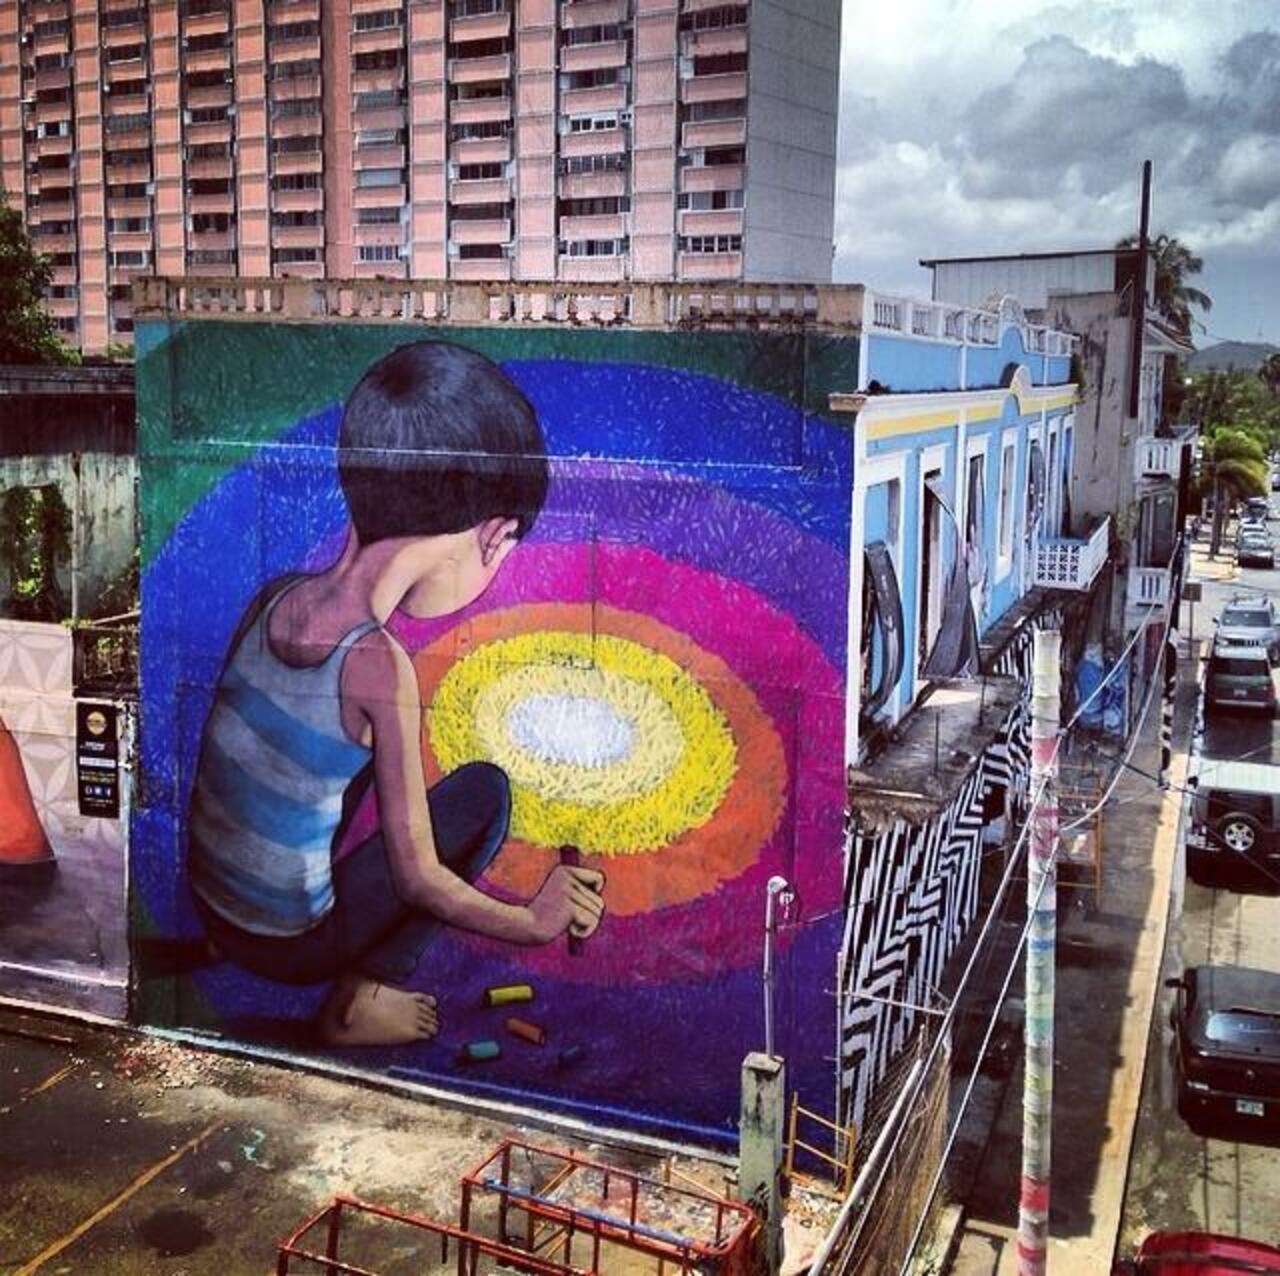 Artist Seth Globepainter new large scale Street Art mural in Puerto Rico #art #mural #graffiti #streetart https://t.co/XvszpiNOqr